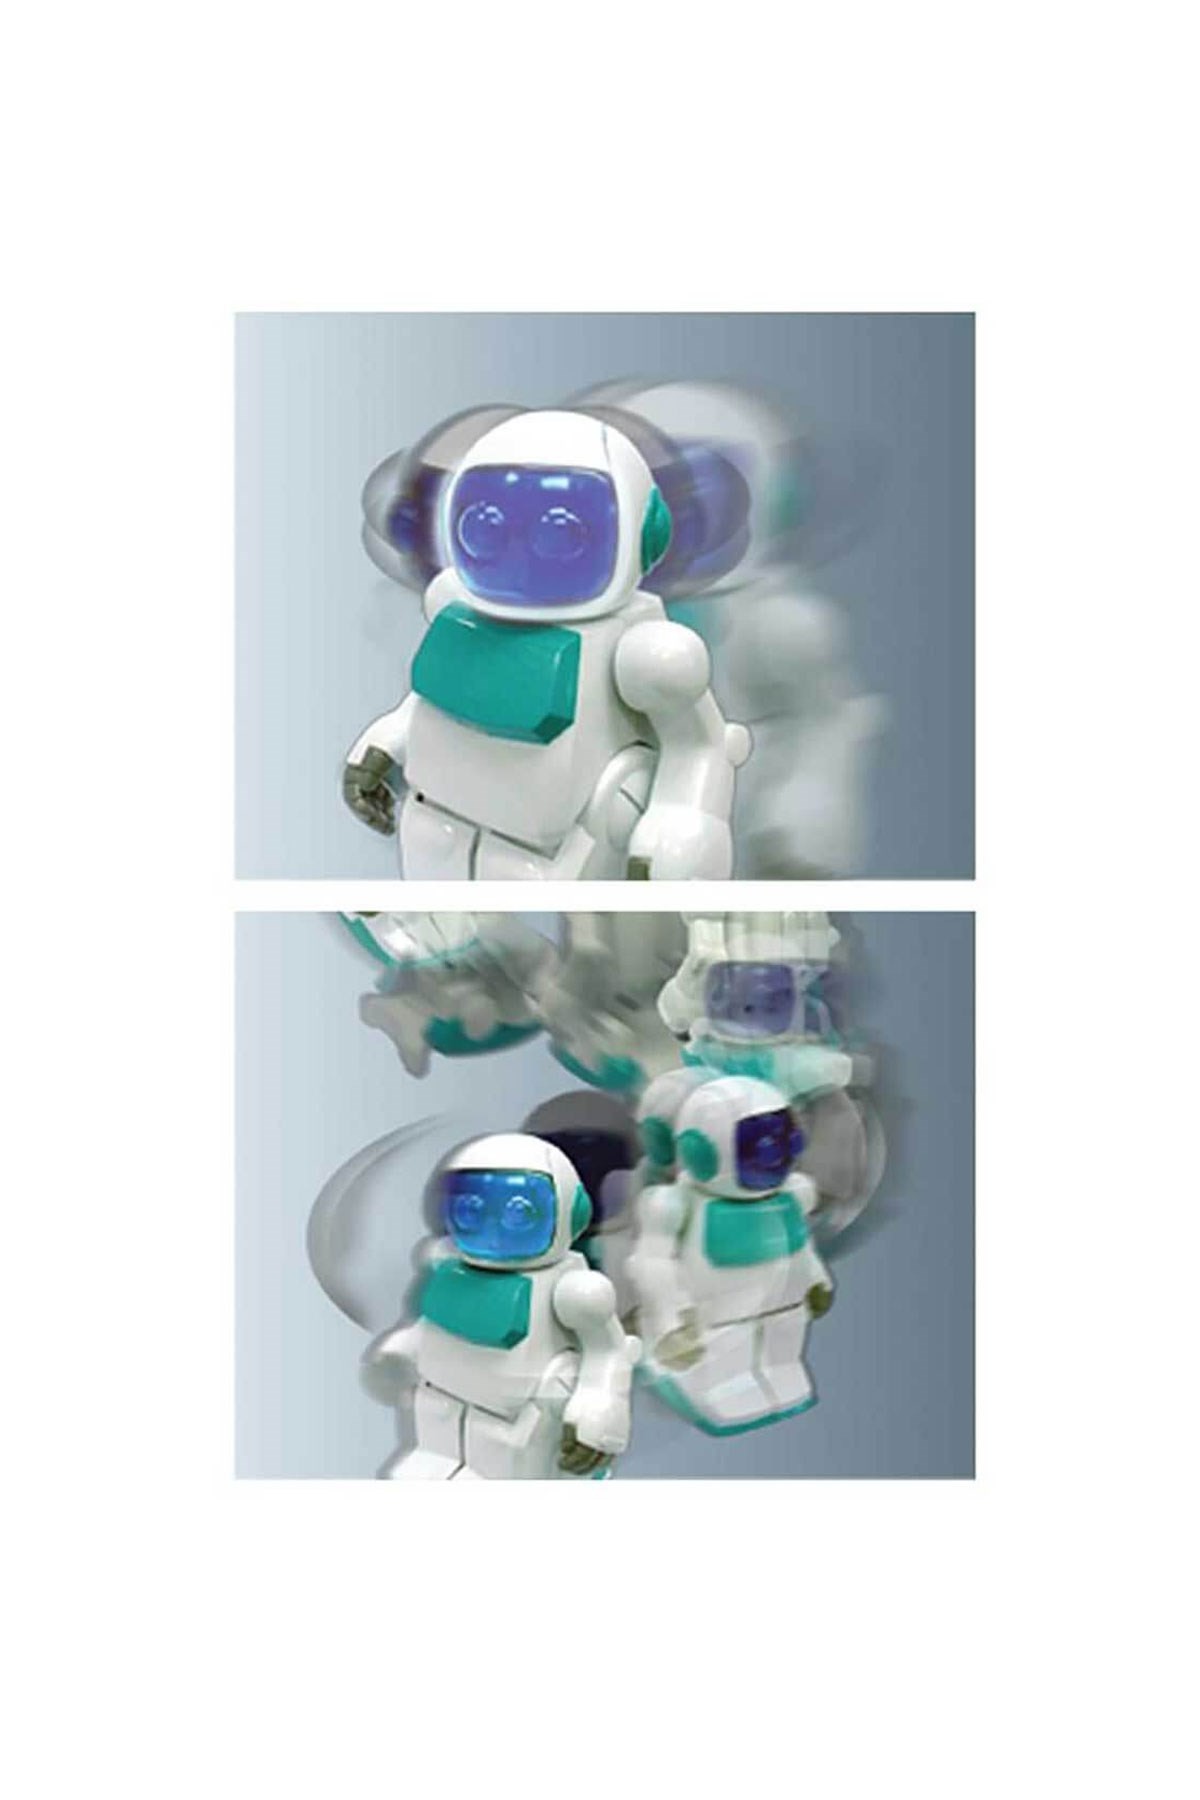 Silverlit Moonwalker Sesli Robot